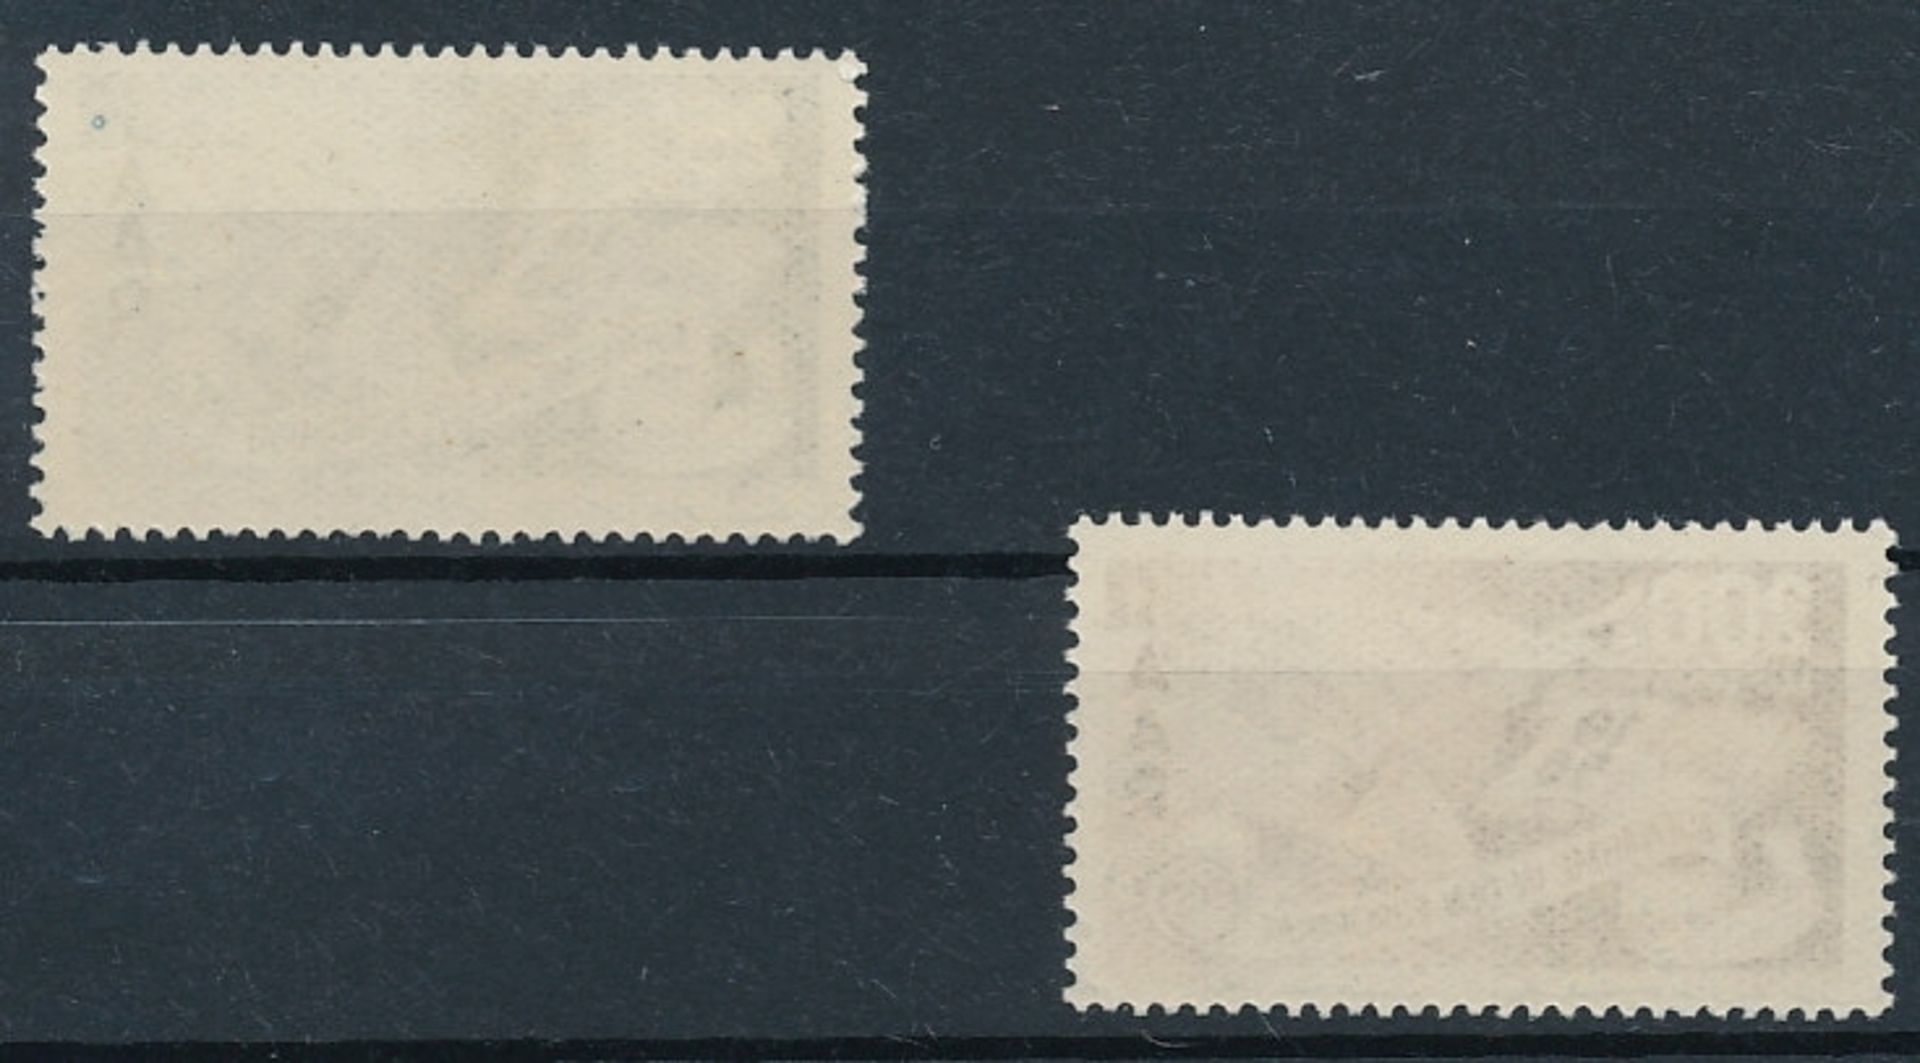 2 Briefmarken "Aufnahme des Saarlandes in den Europarat und Flugpostmarke", Saar, postfrisch, - Image 2 of 2